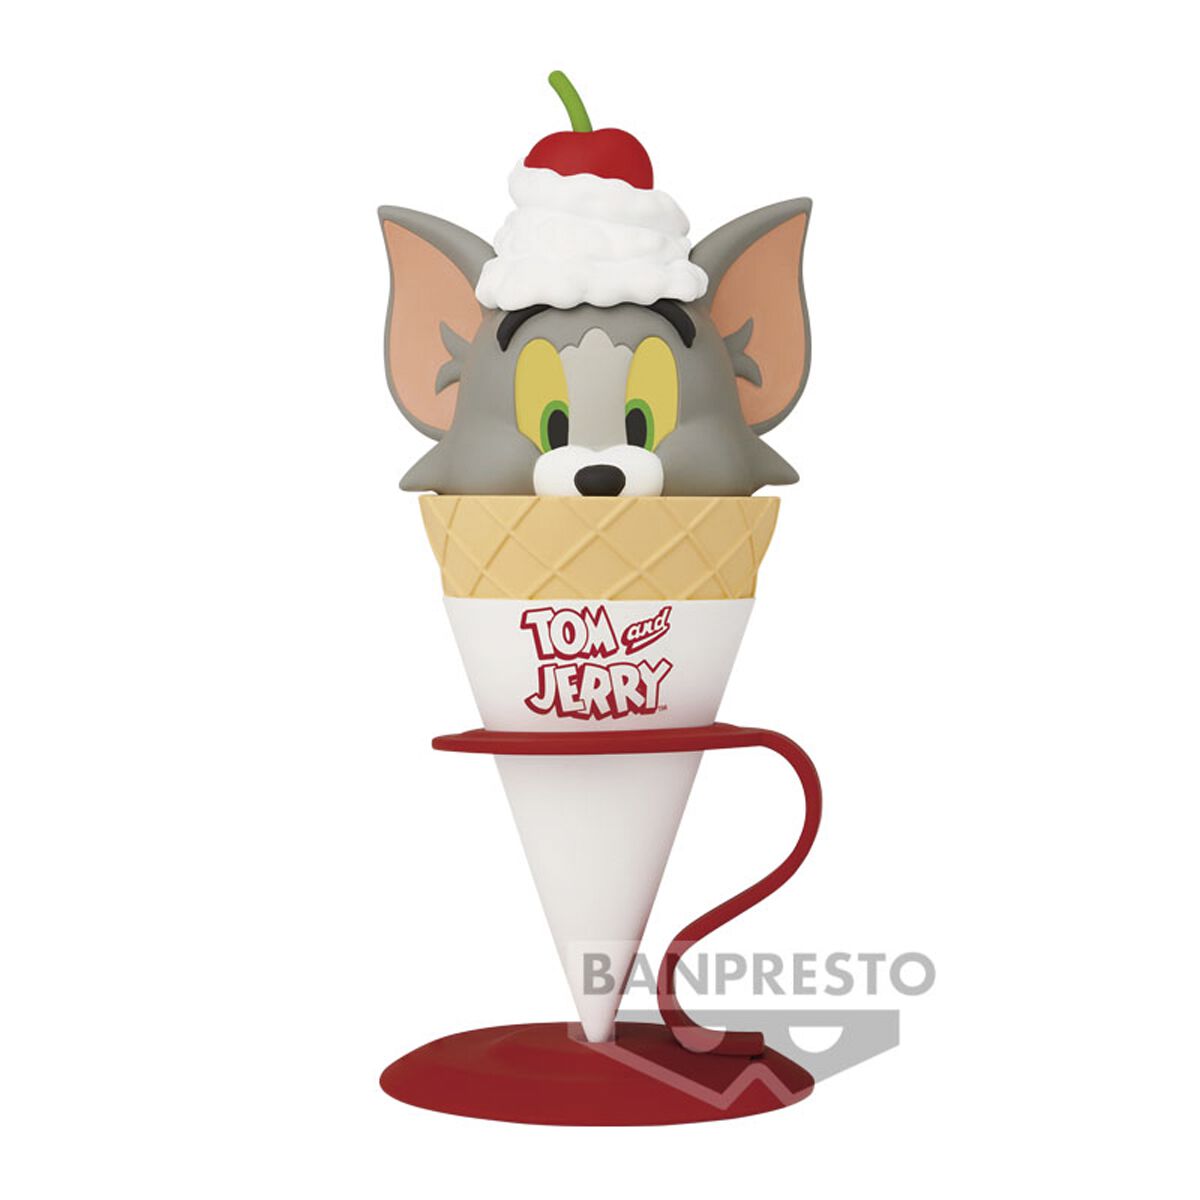 Tom And Jerry - Banpresto - Yummy Yummy World - Tom - Sammelfiguren - multicolor